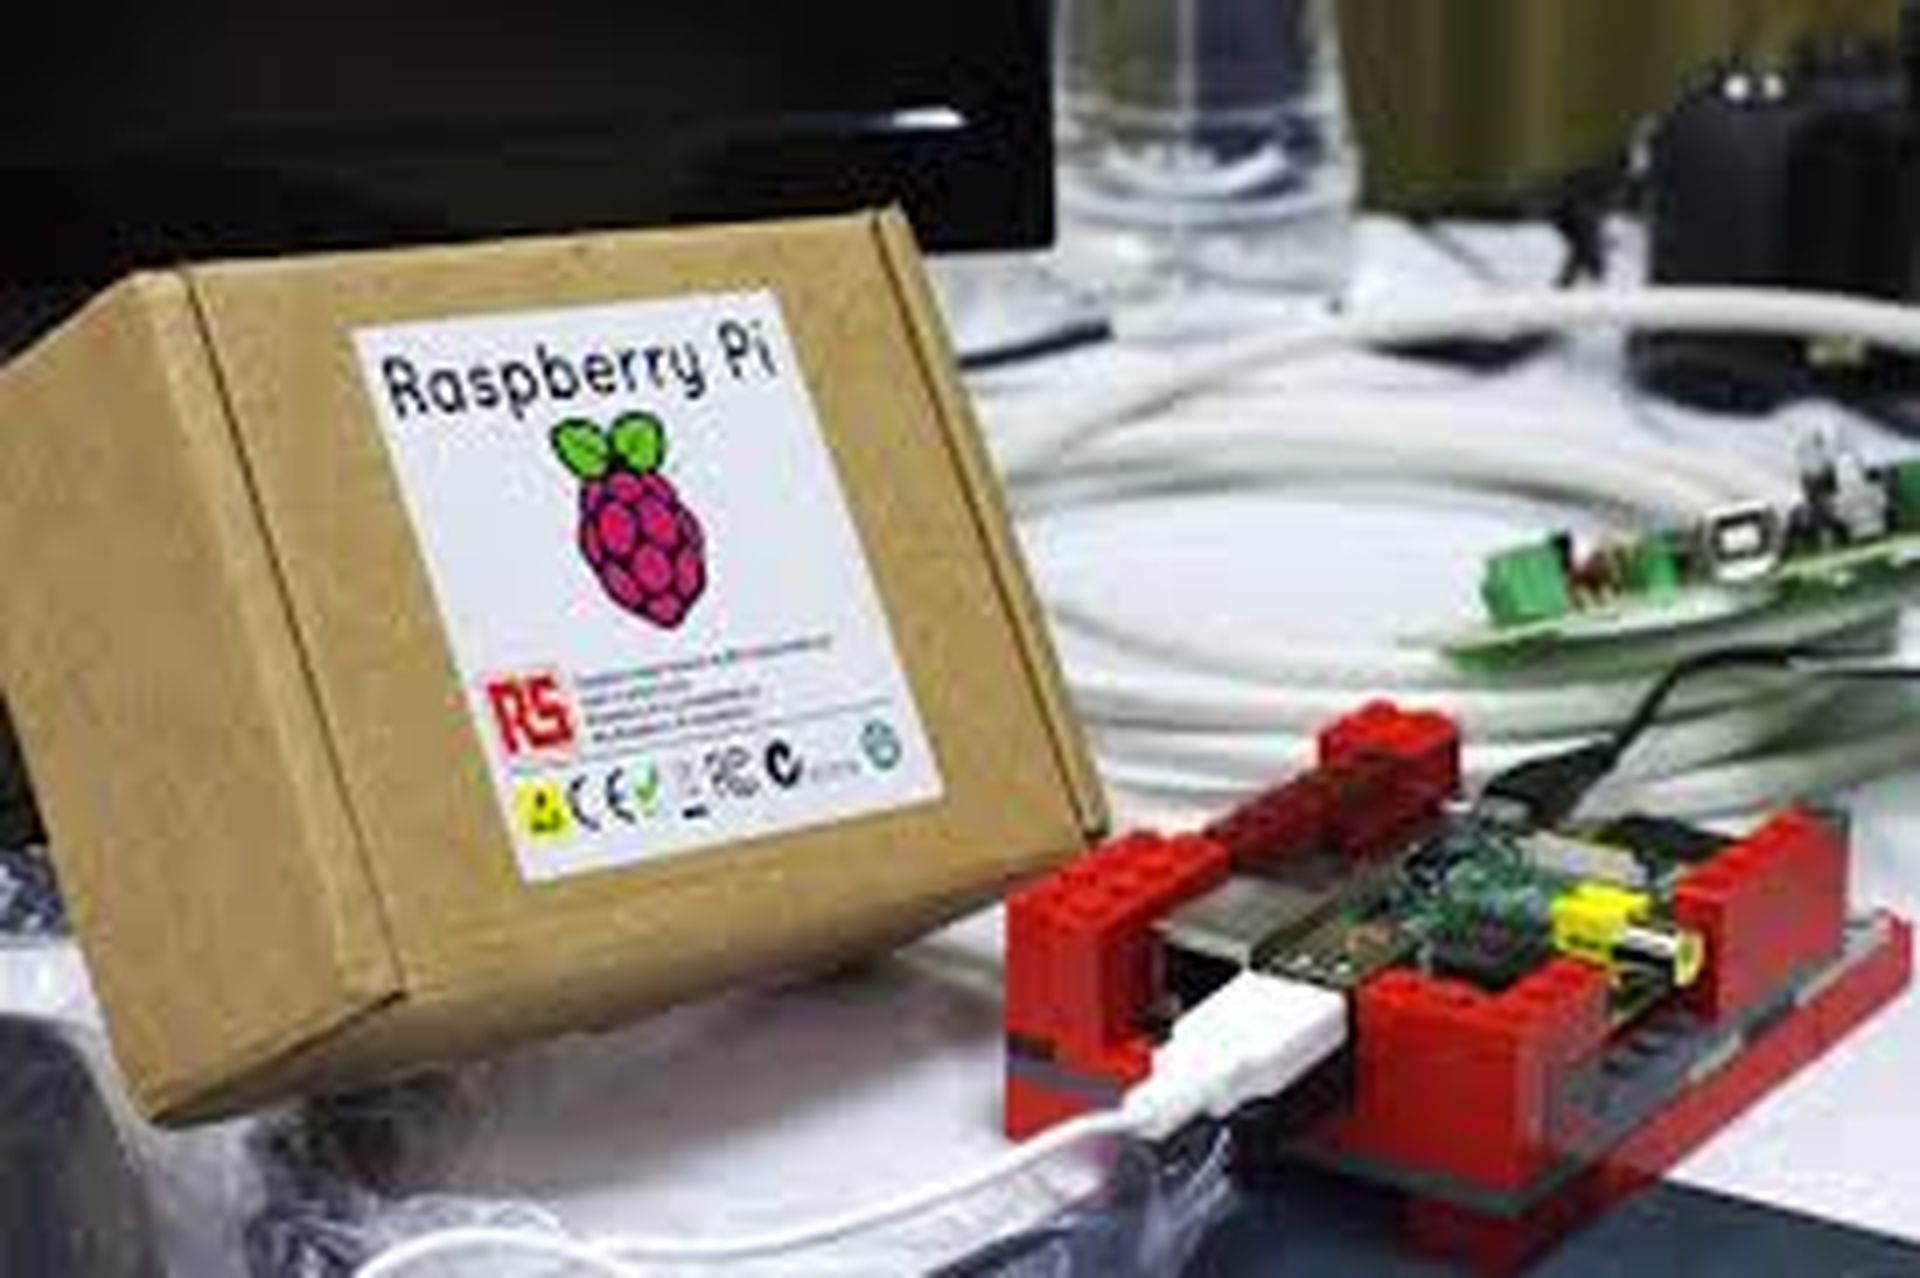 Raspberry Pi declines bribe to pre-install malware